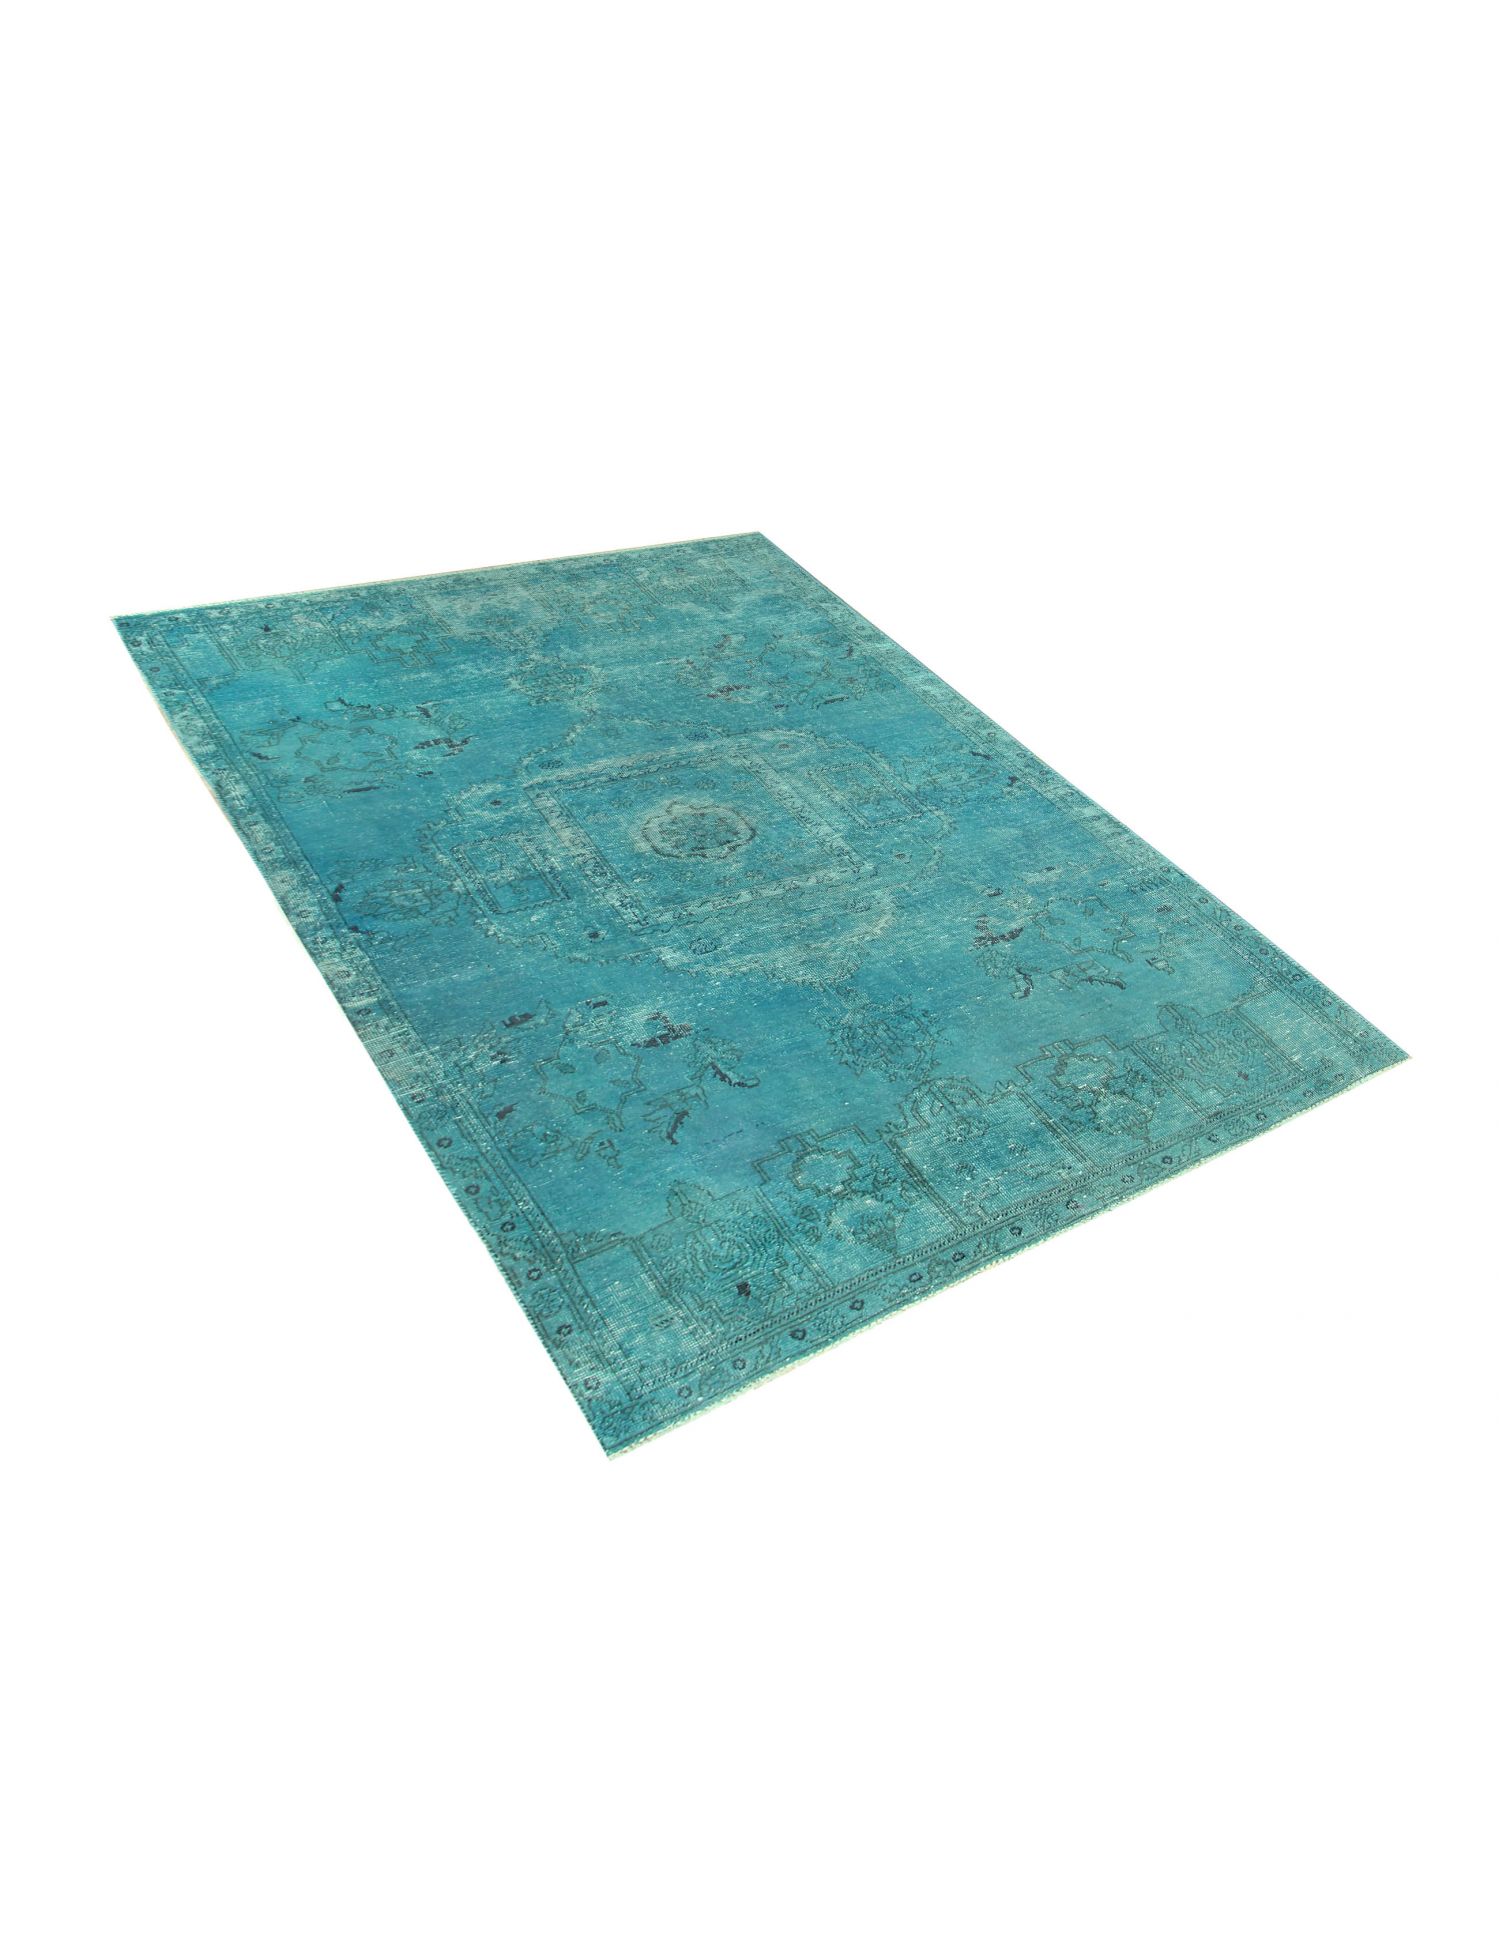 Persischer vintage teppich  türkis <br/>242 x 124 cm